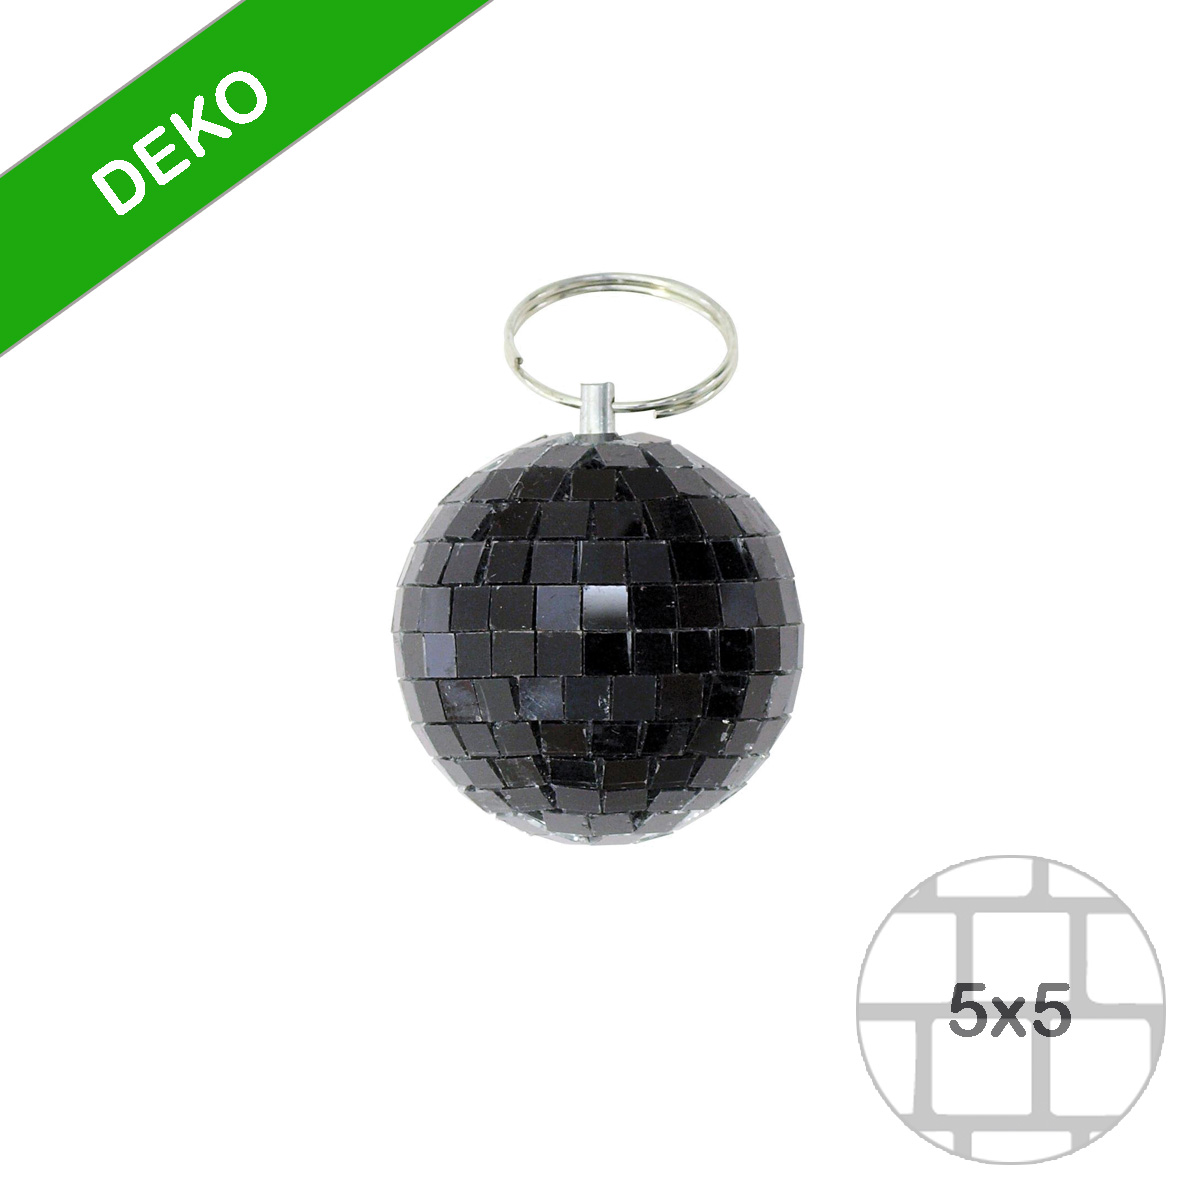 Spiegelkugel 5cm schwarz- Discokugel Echtglas zur Dekoration - mirrorball black